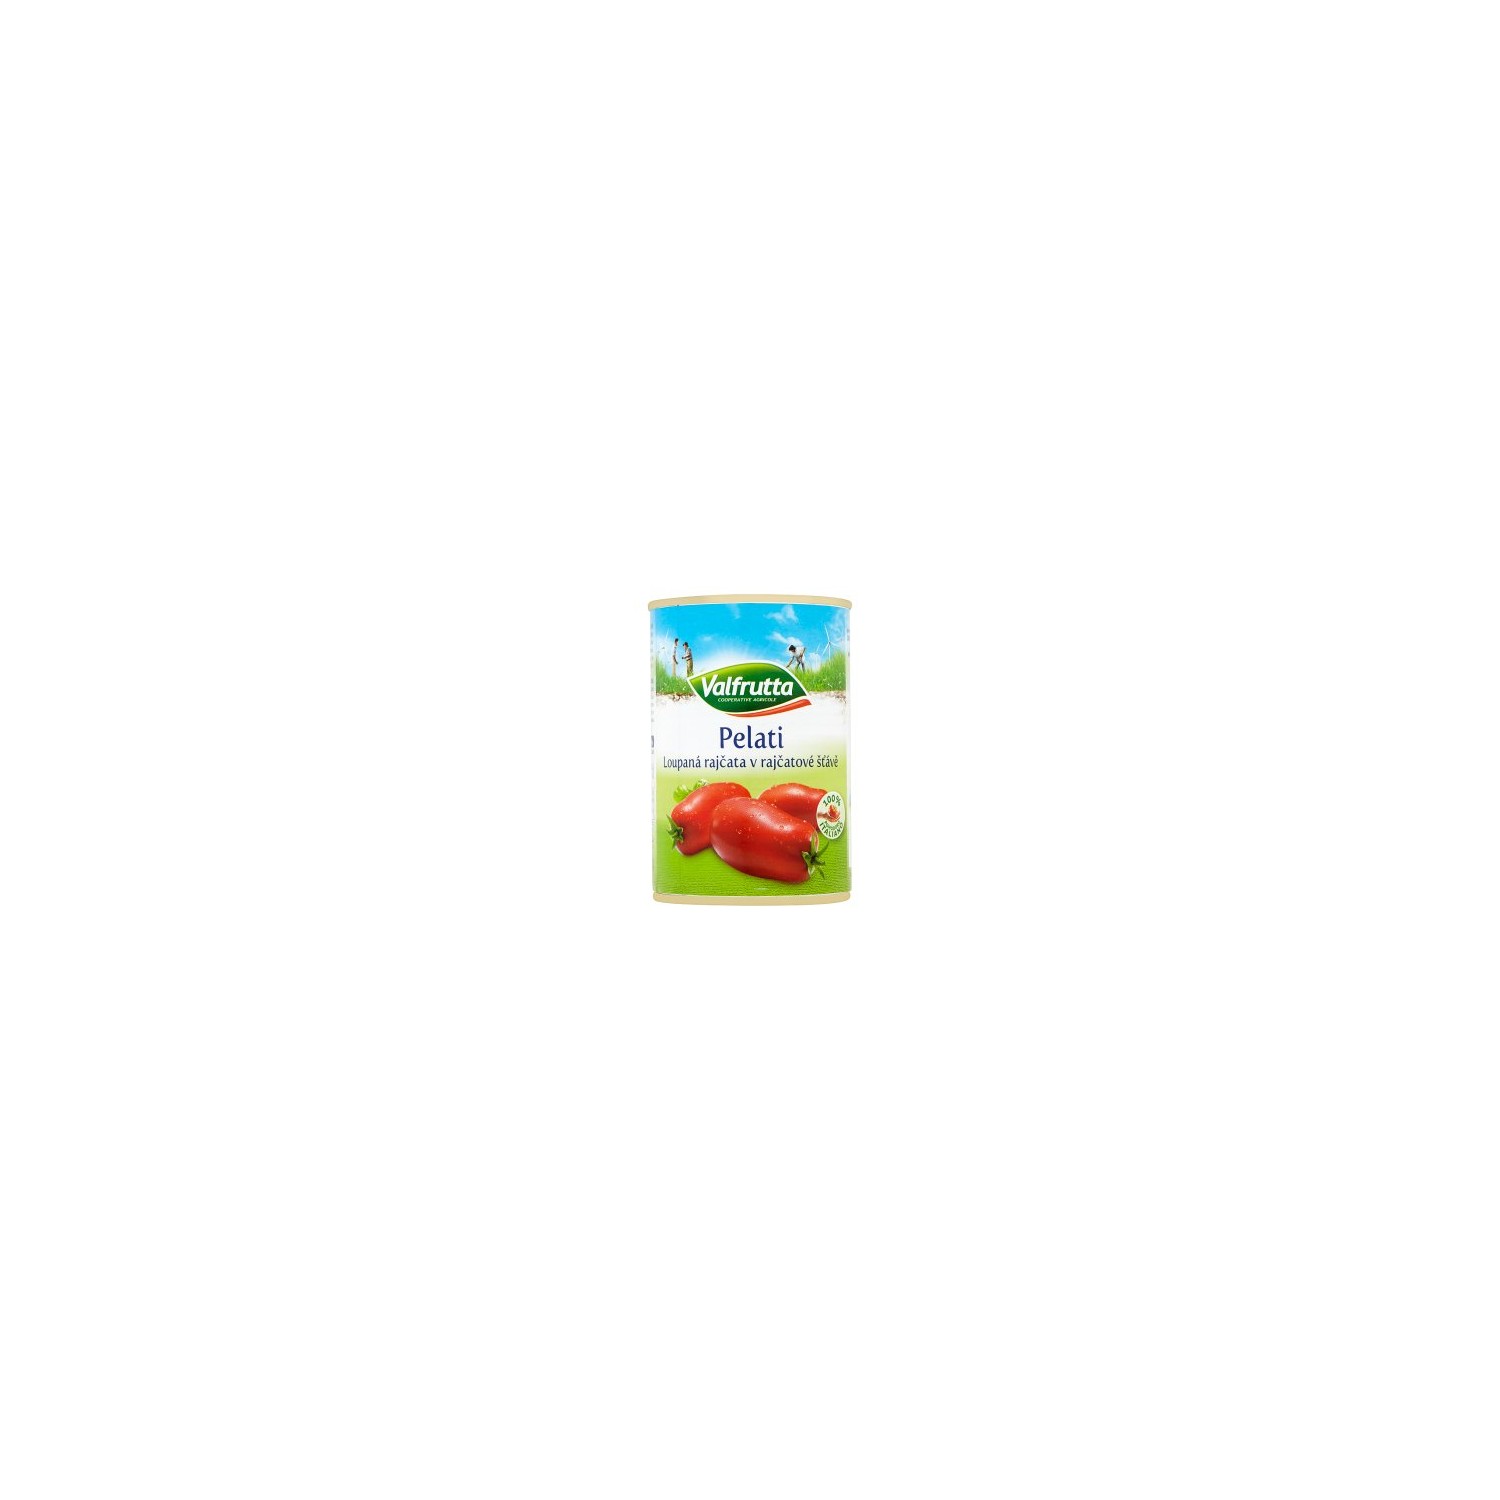 Valfrutta 400g Peeled Tomatoes in Tomato Juice